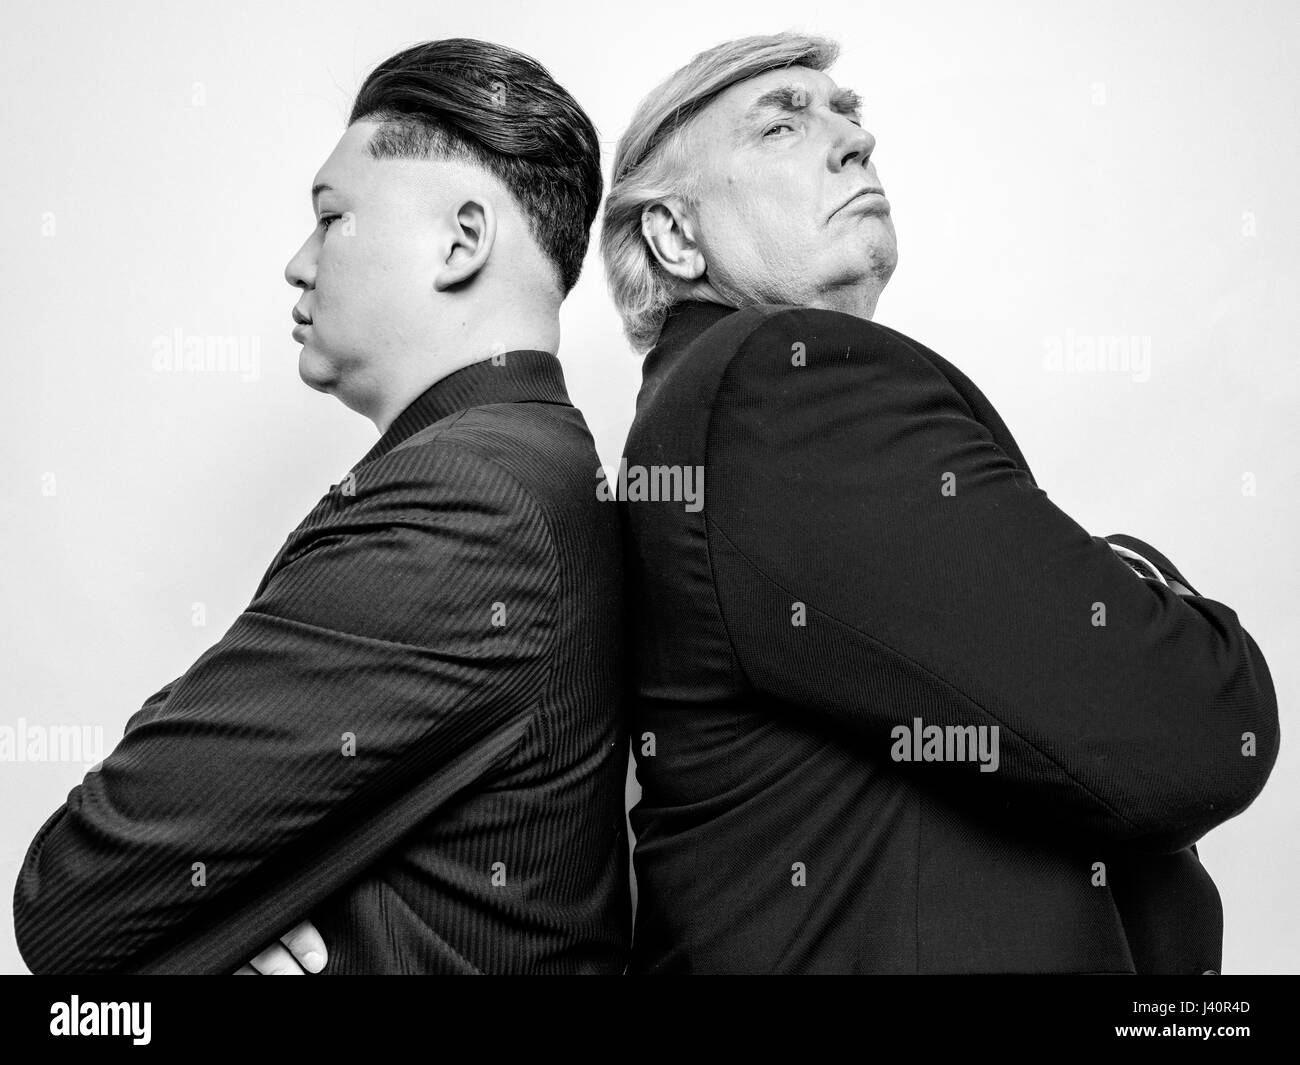 Le président Donald Trump et sosie dirigeant suprême de la Corée du Nord Kim Jong-Un shoot portrait sosie. Une histoire d'amour improbable de deux dictateurs. Banque D'Images